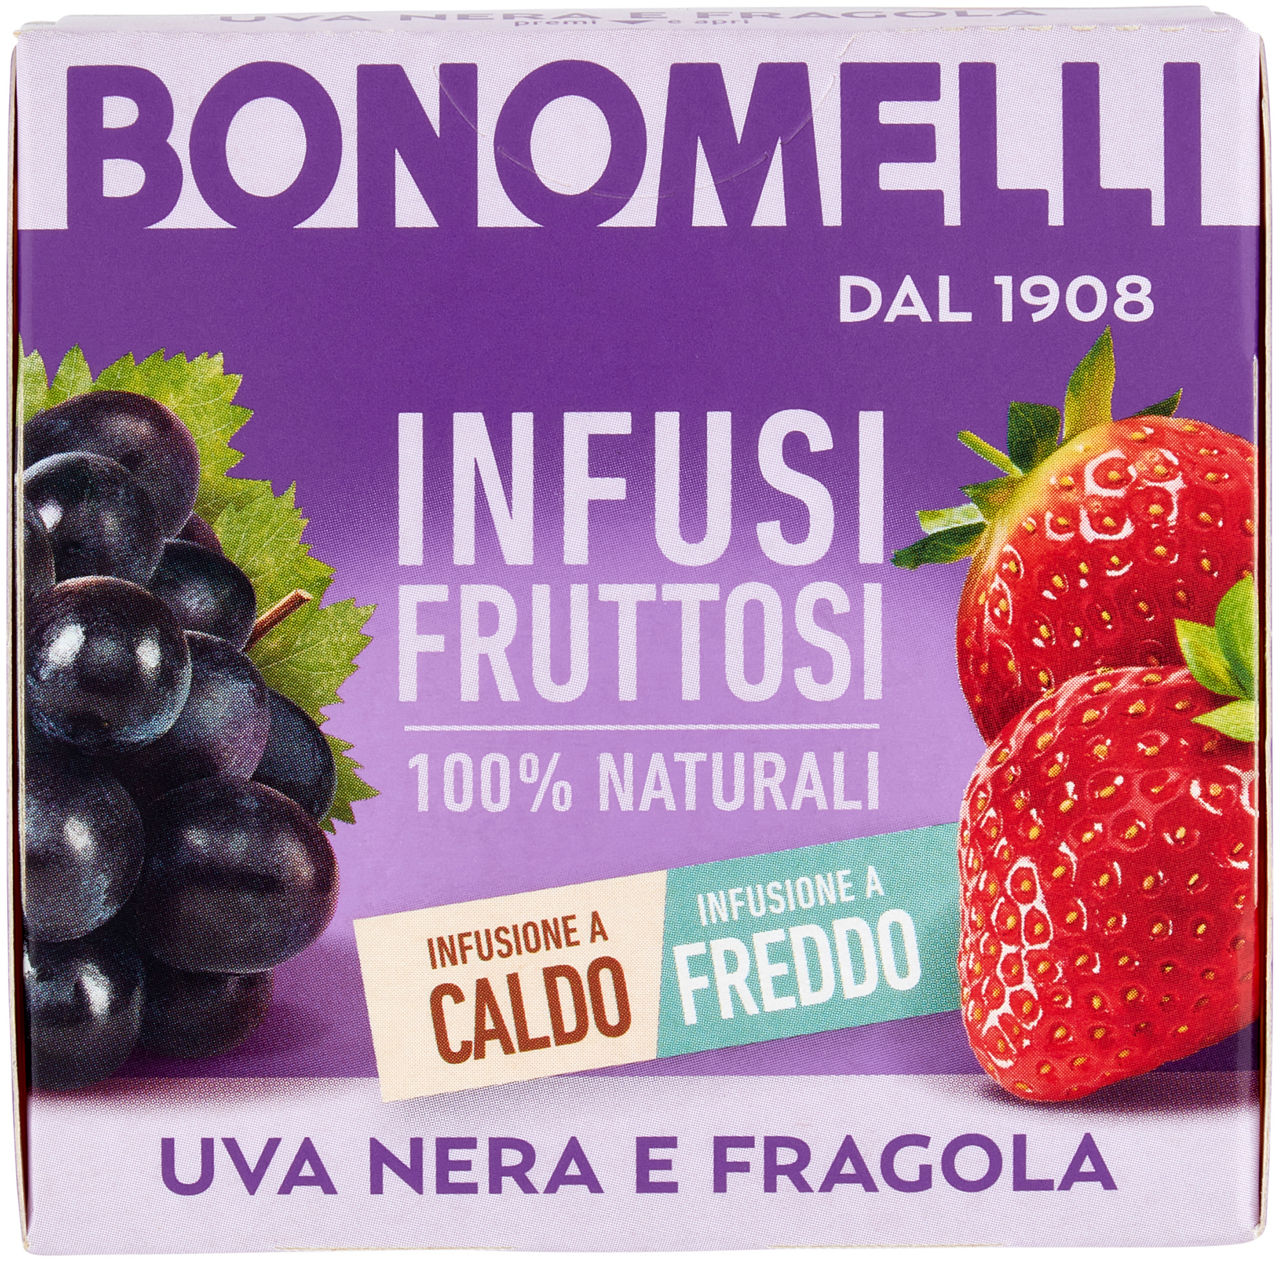 Infuso fruttoso uva nera & fragola 12 filtri 24 g